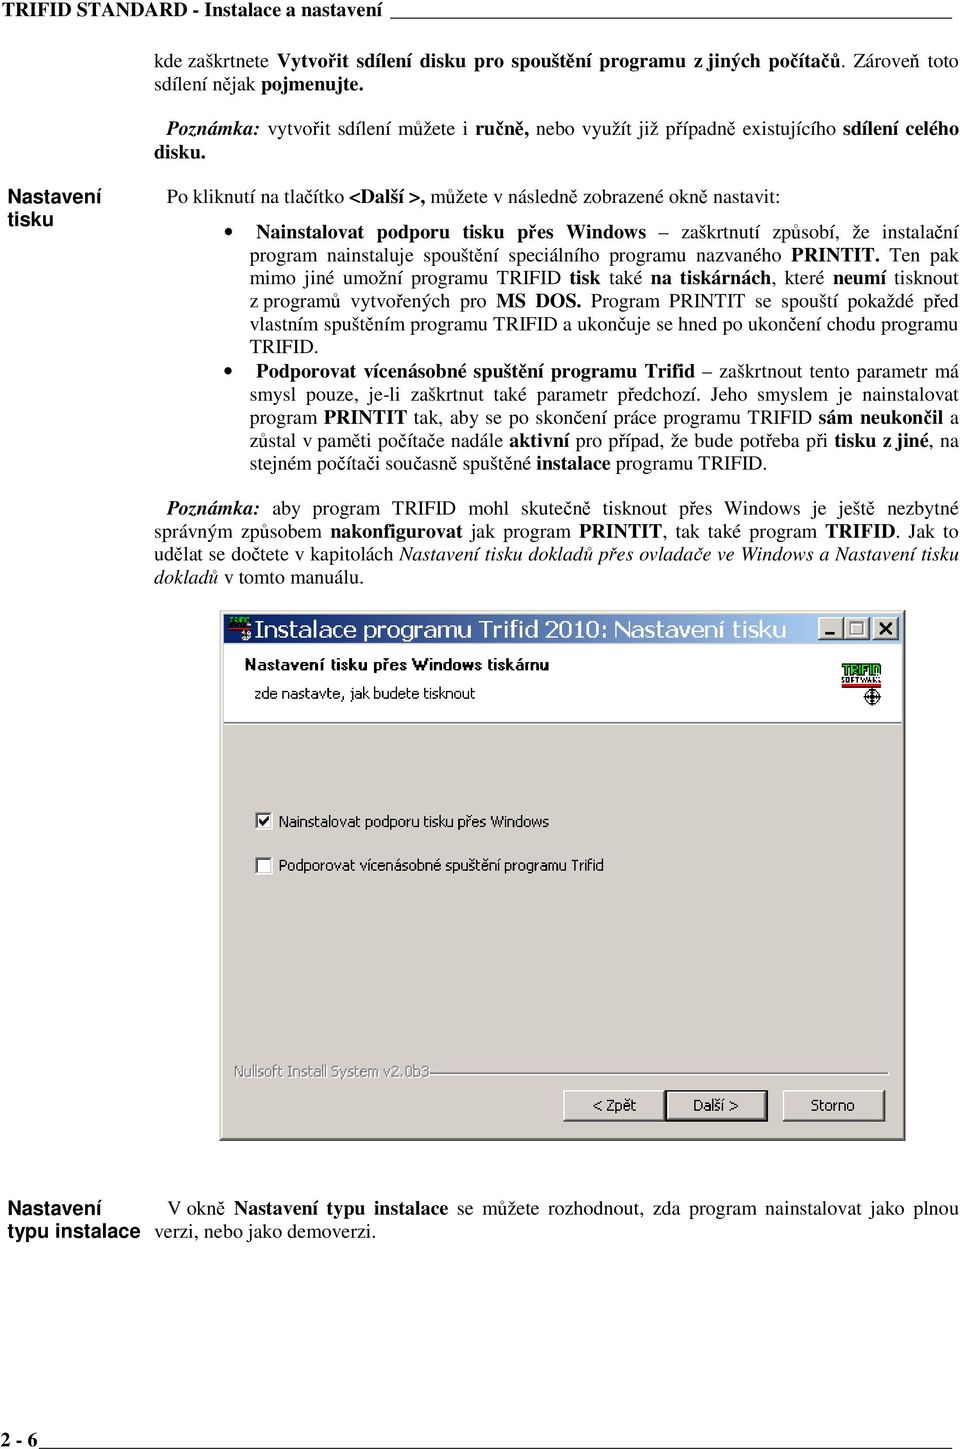 Nastavení tisku Po kliknutí na tlačítko <Další >, můžete v následně zobrazené okně nastavit: Nainstalovat podporu tisku přes Windows zaškrtnutí způsobí, že instalační program nainstaluje spouštění